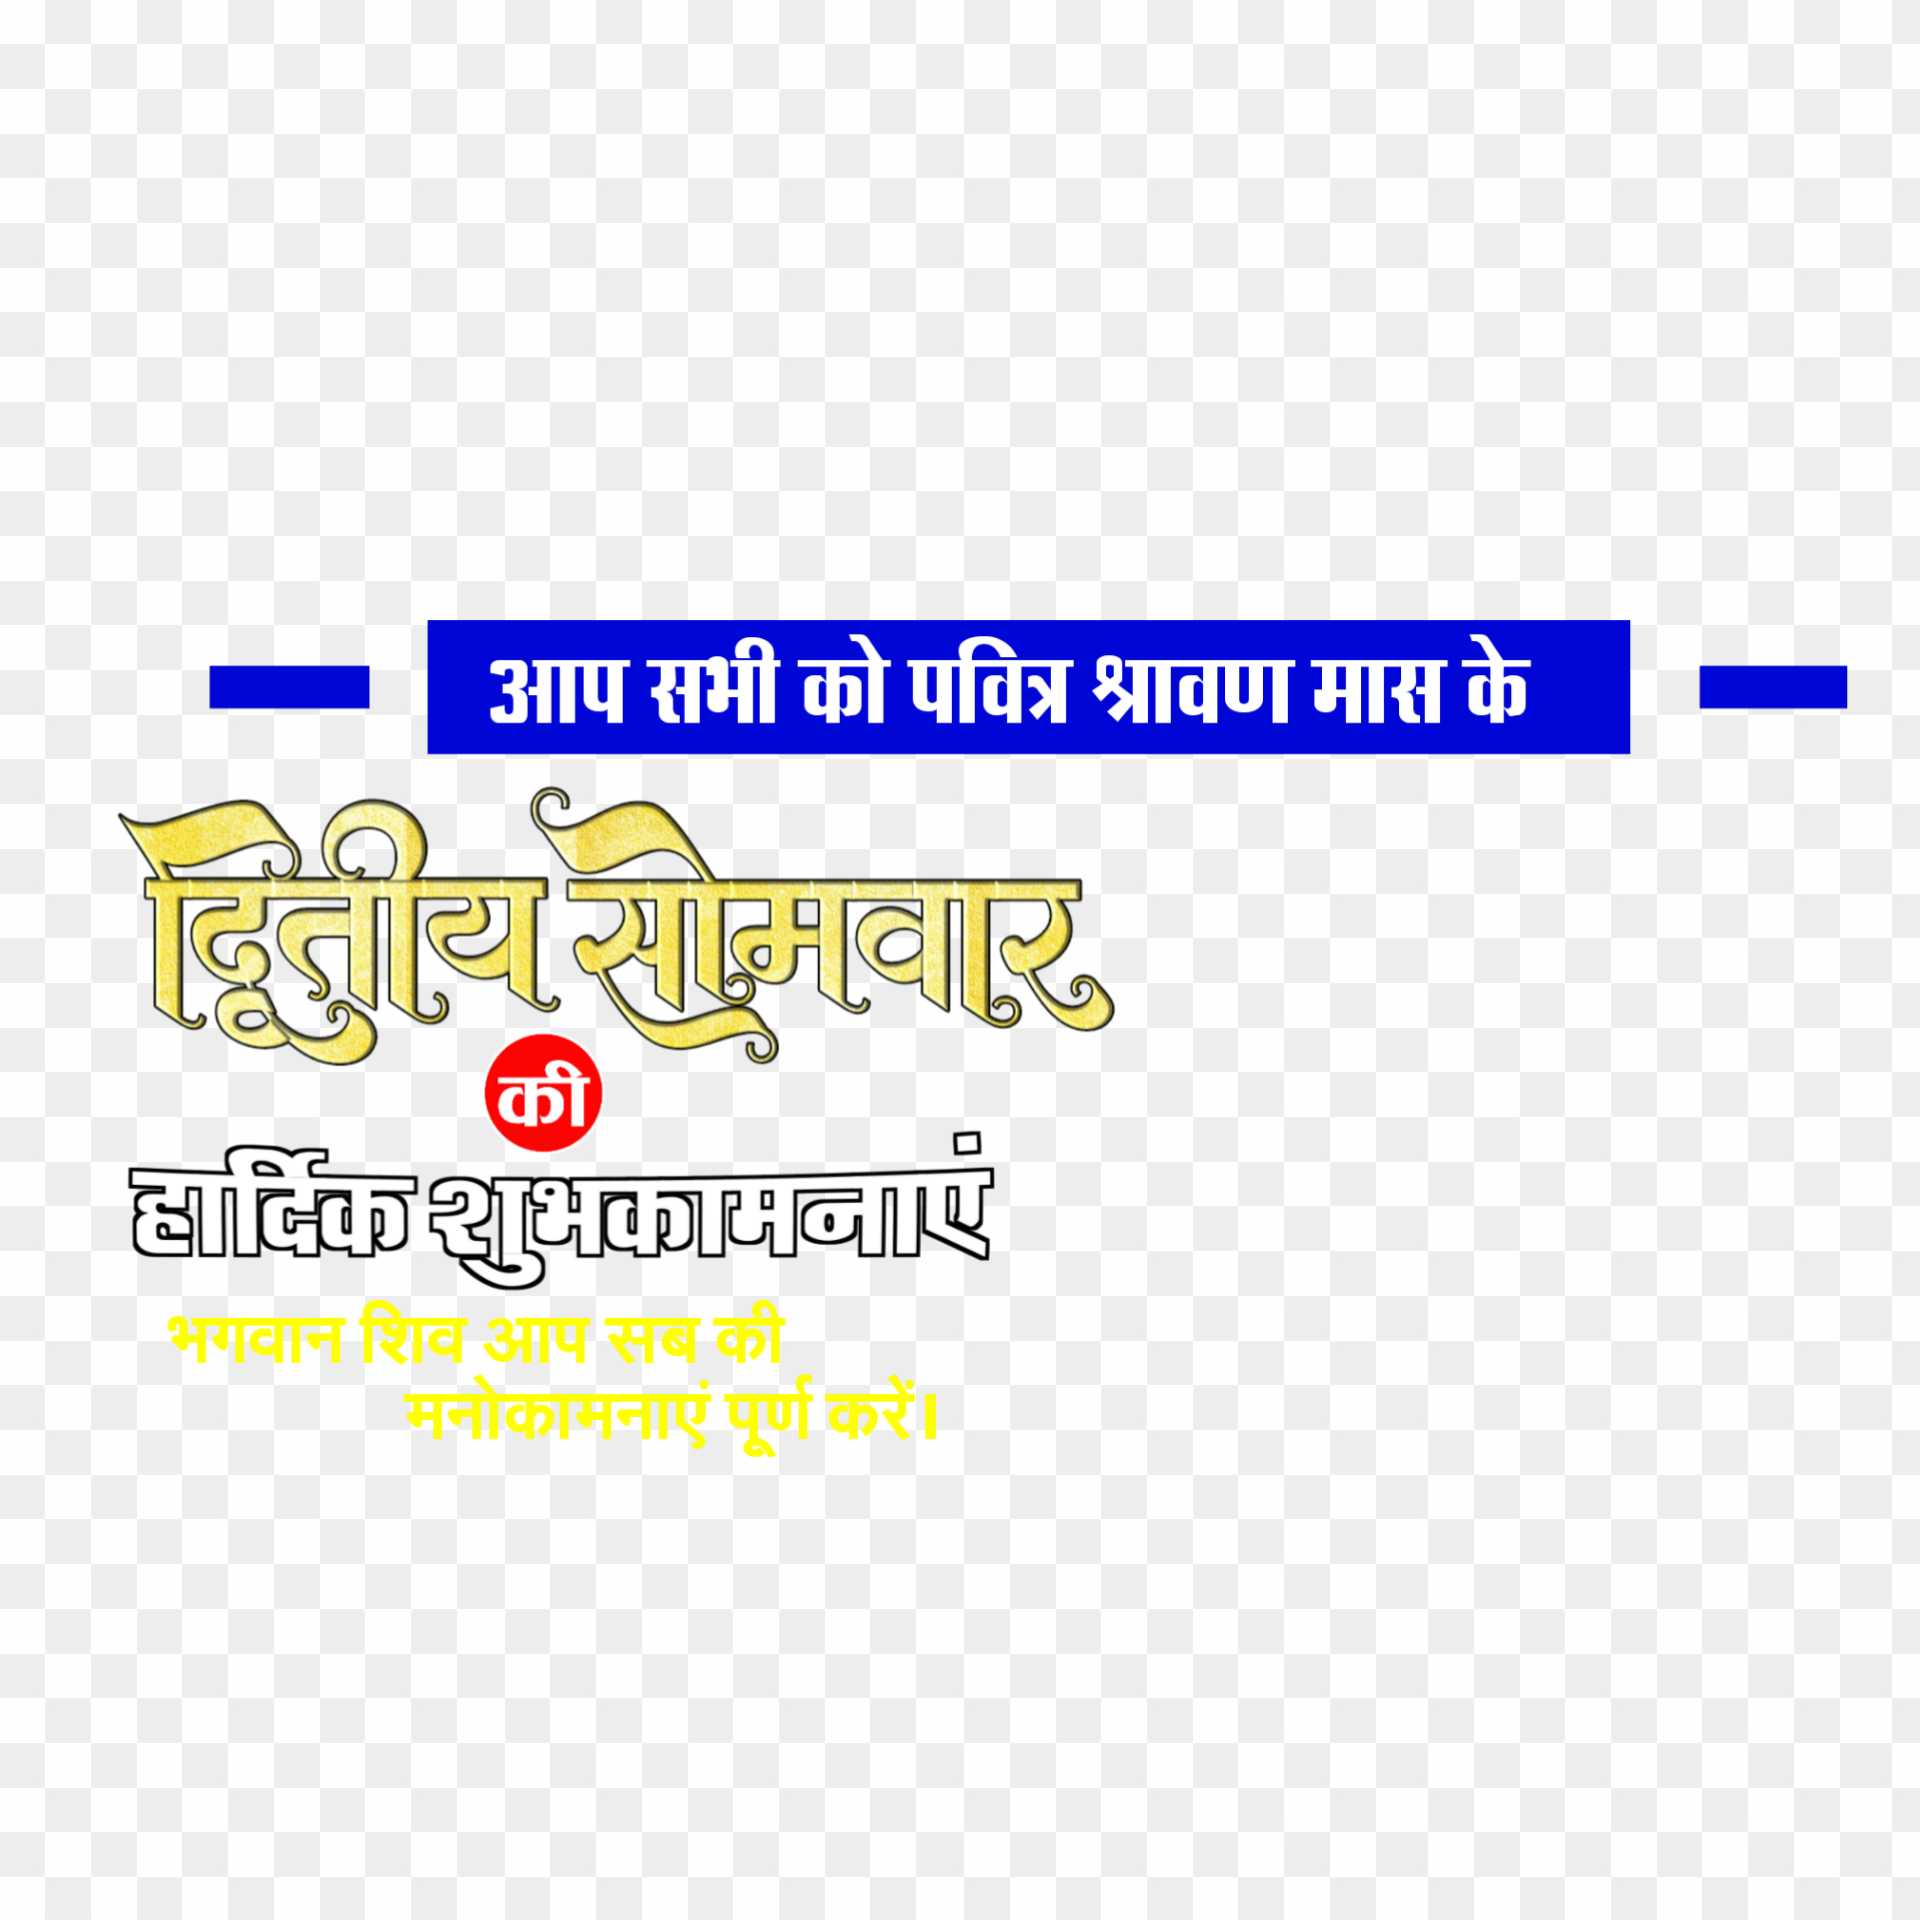 Shravan Mas second November text PNG images download 